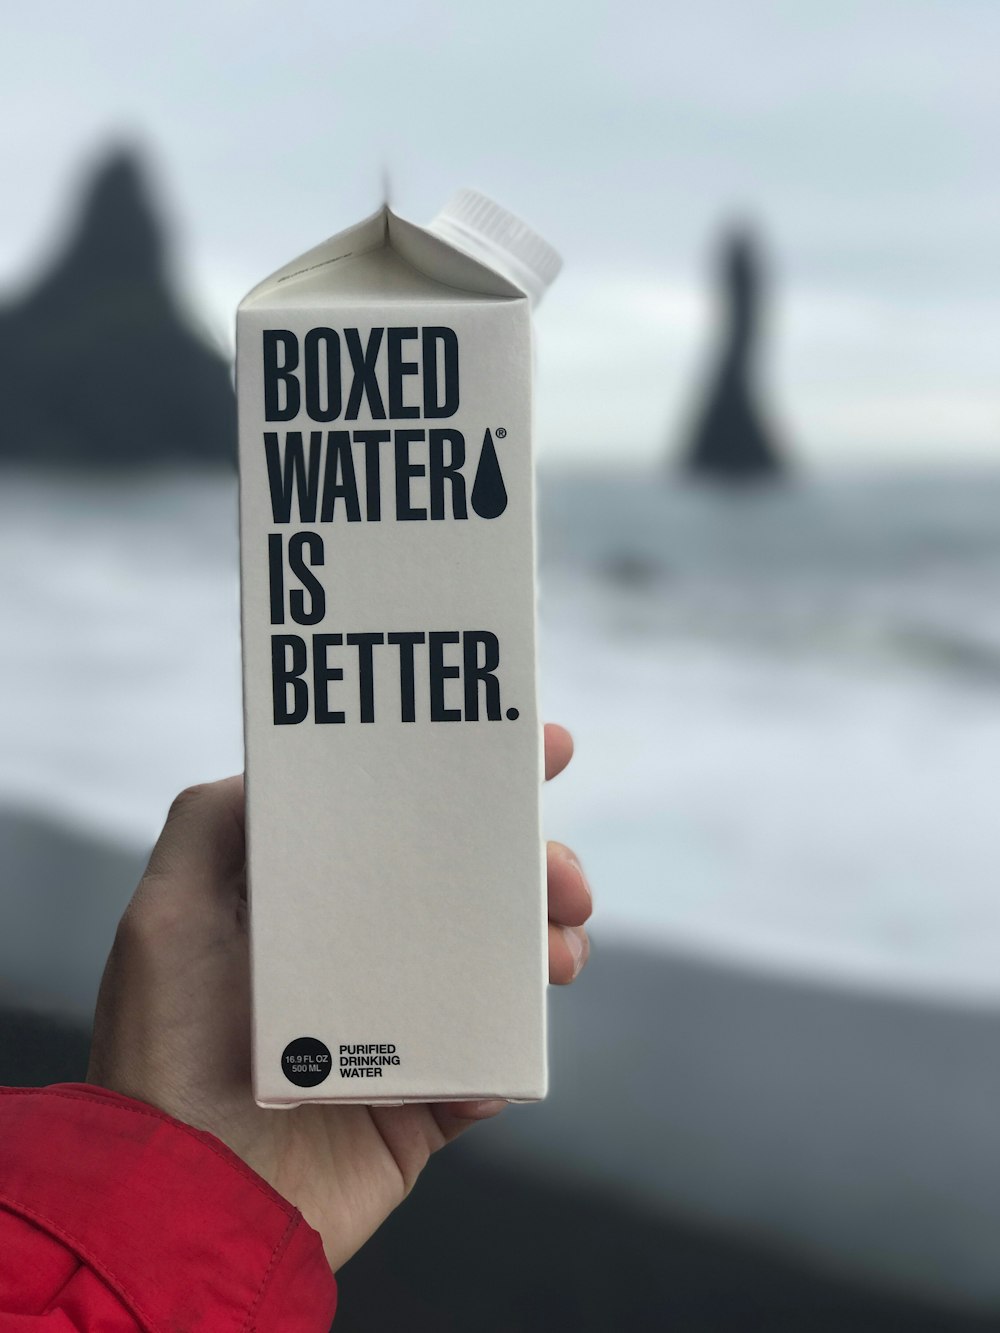 Un carton d’eau en boîte est tenu devant une plage islandaise